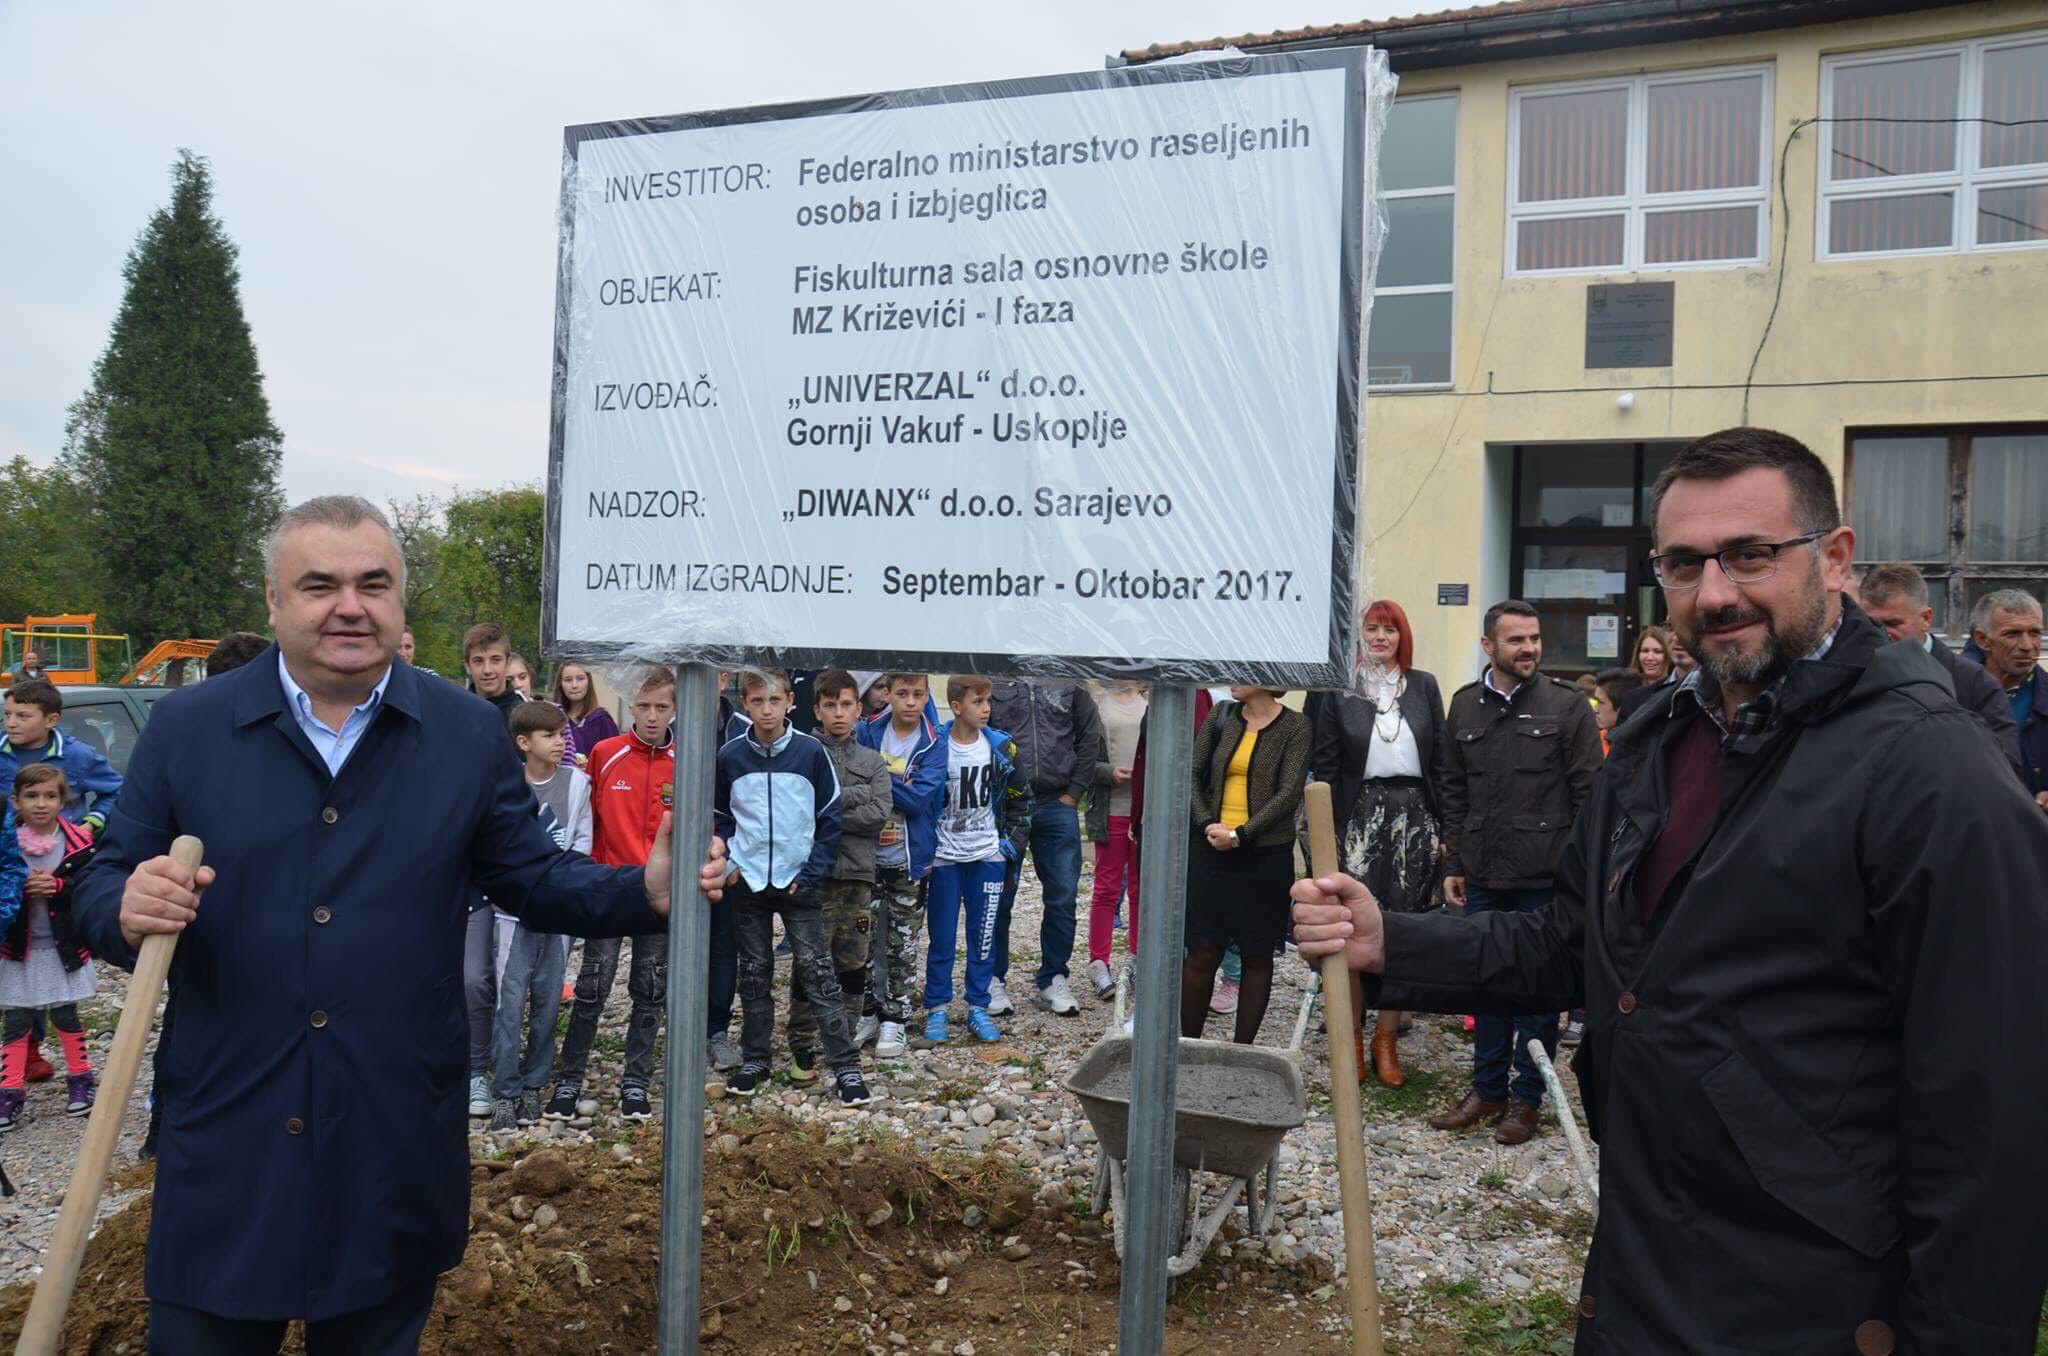 Stevanović i Ramić položili kamen temeljac za fiskulturnu salu